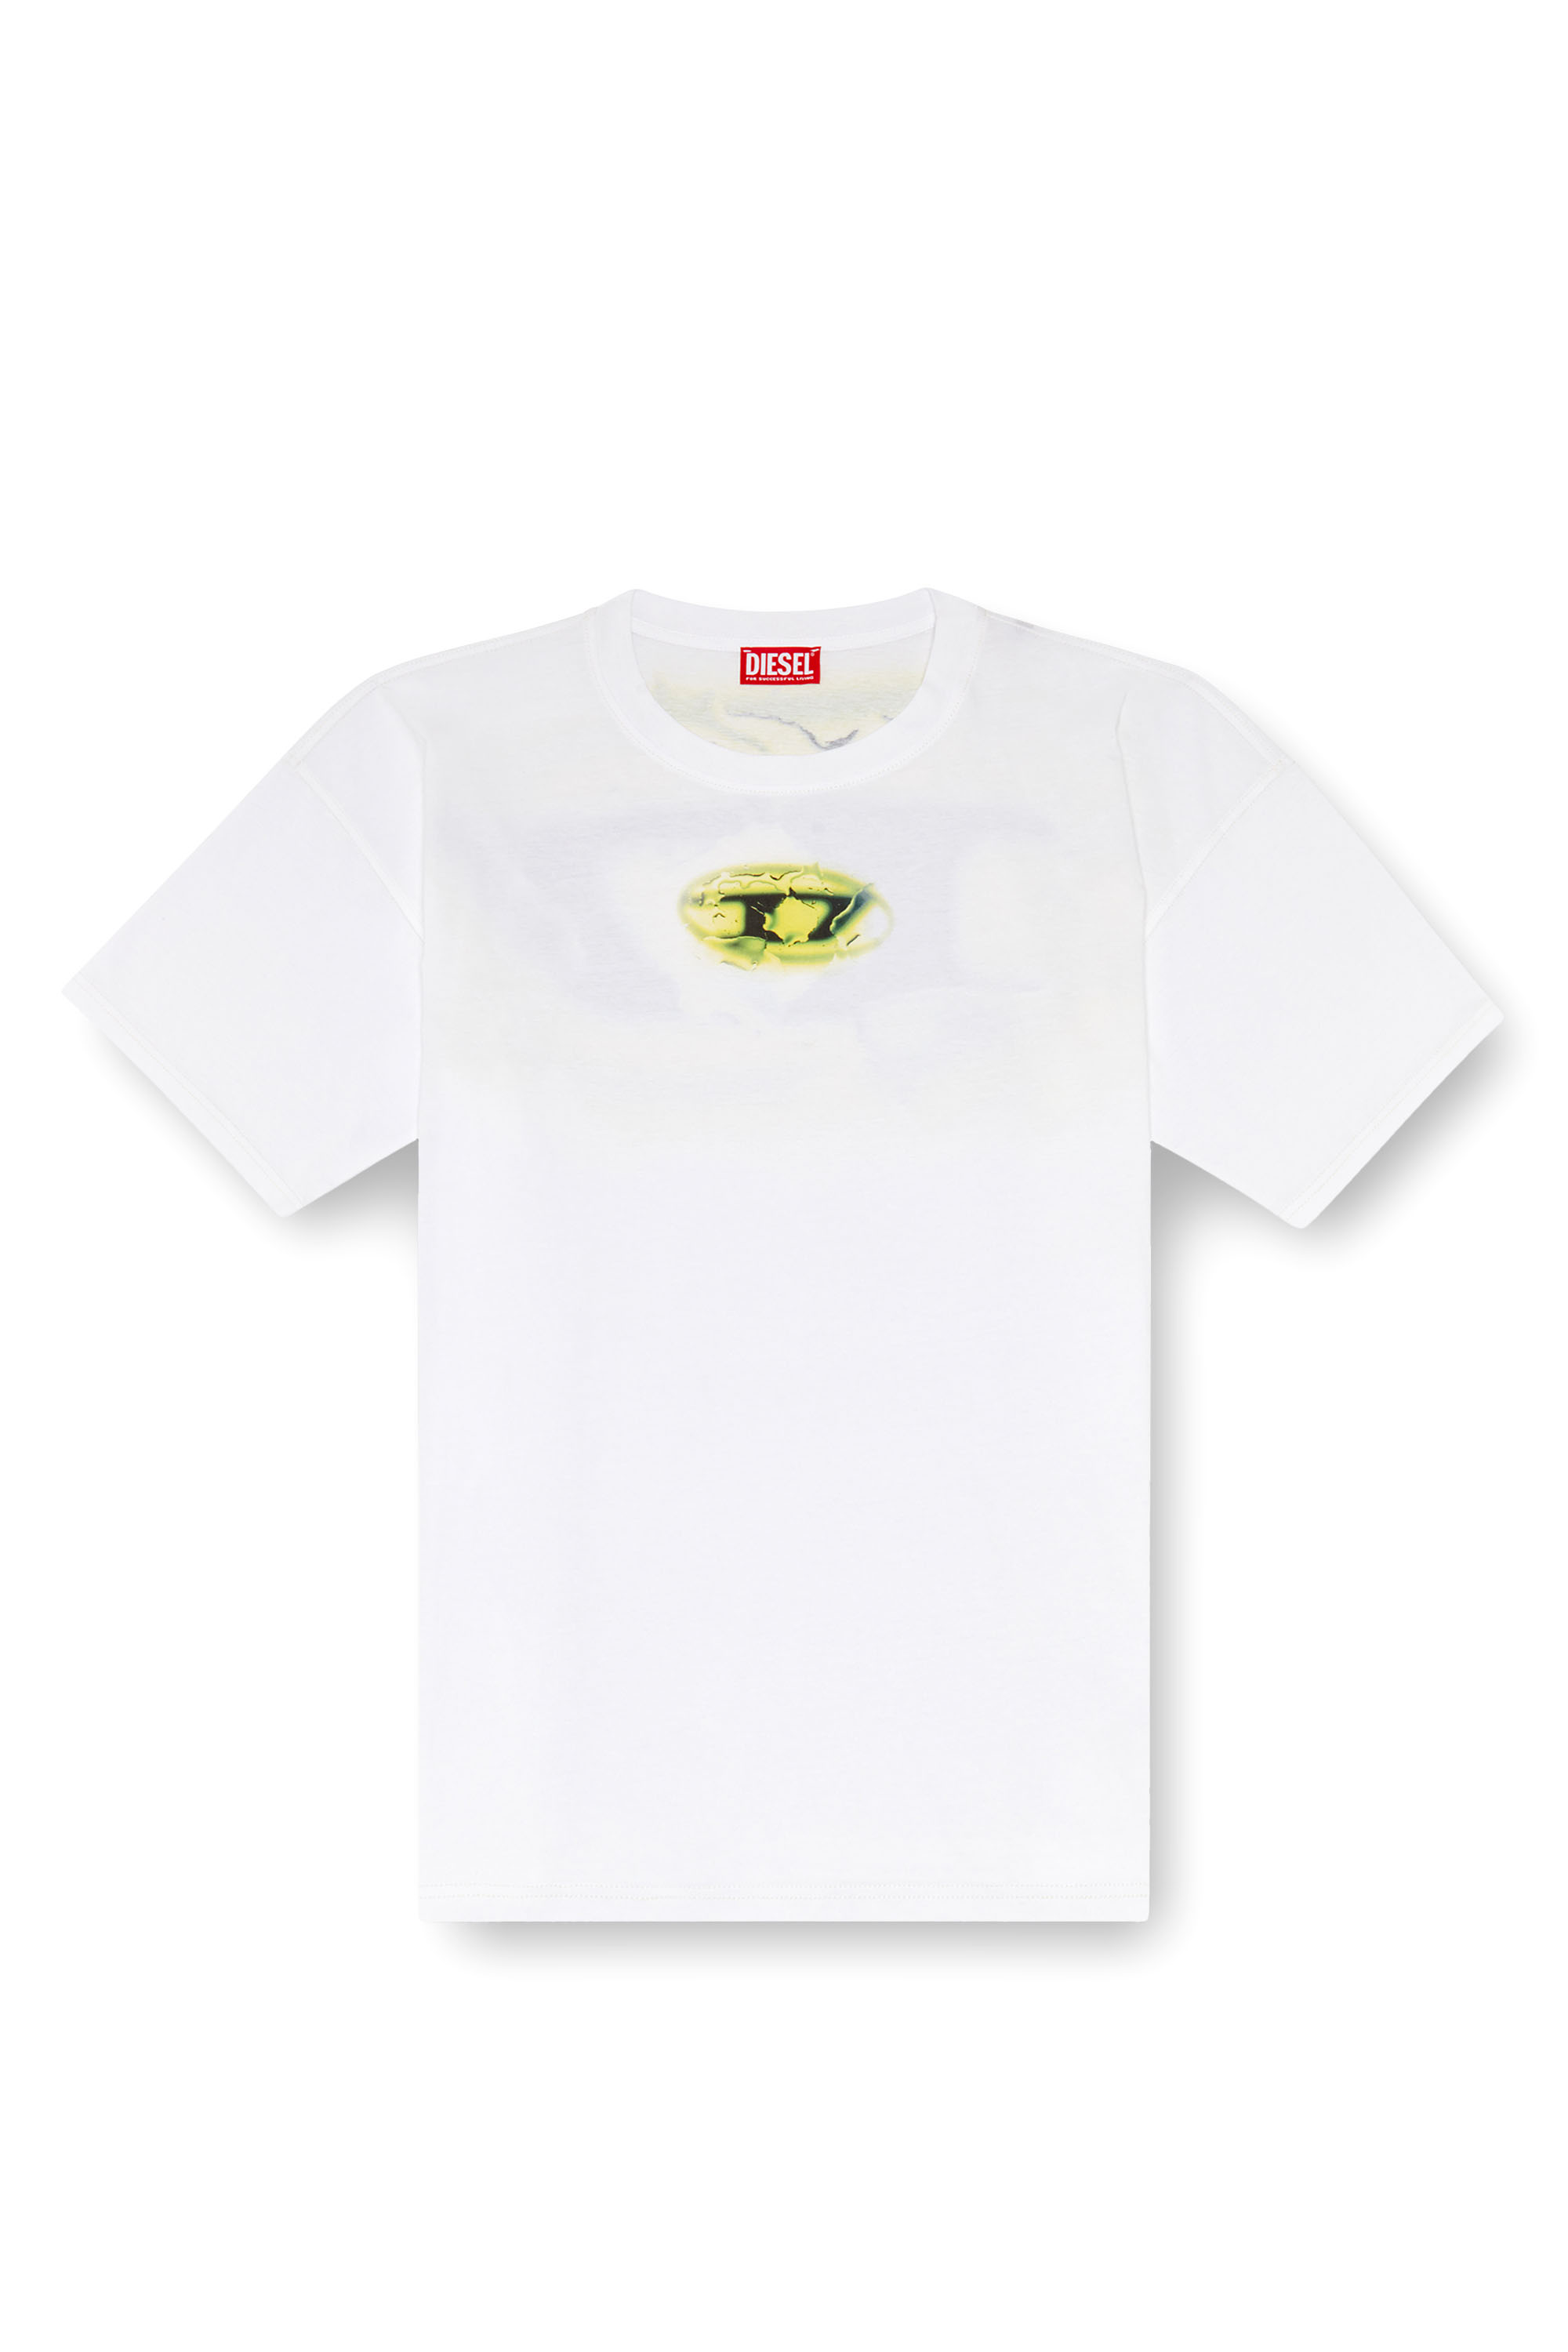 Diesel - T-BOXT-K3, Herren T-Shirt mit Logo in leuchtender Optik in Weiss - Image 3